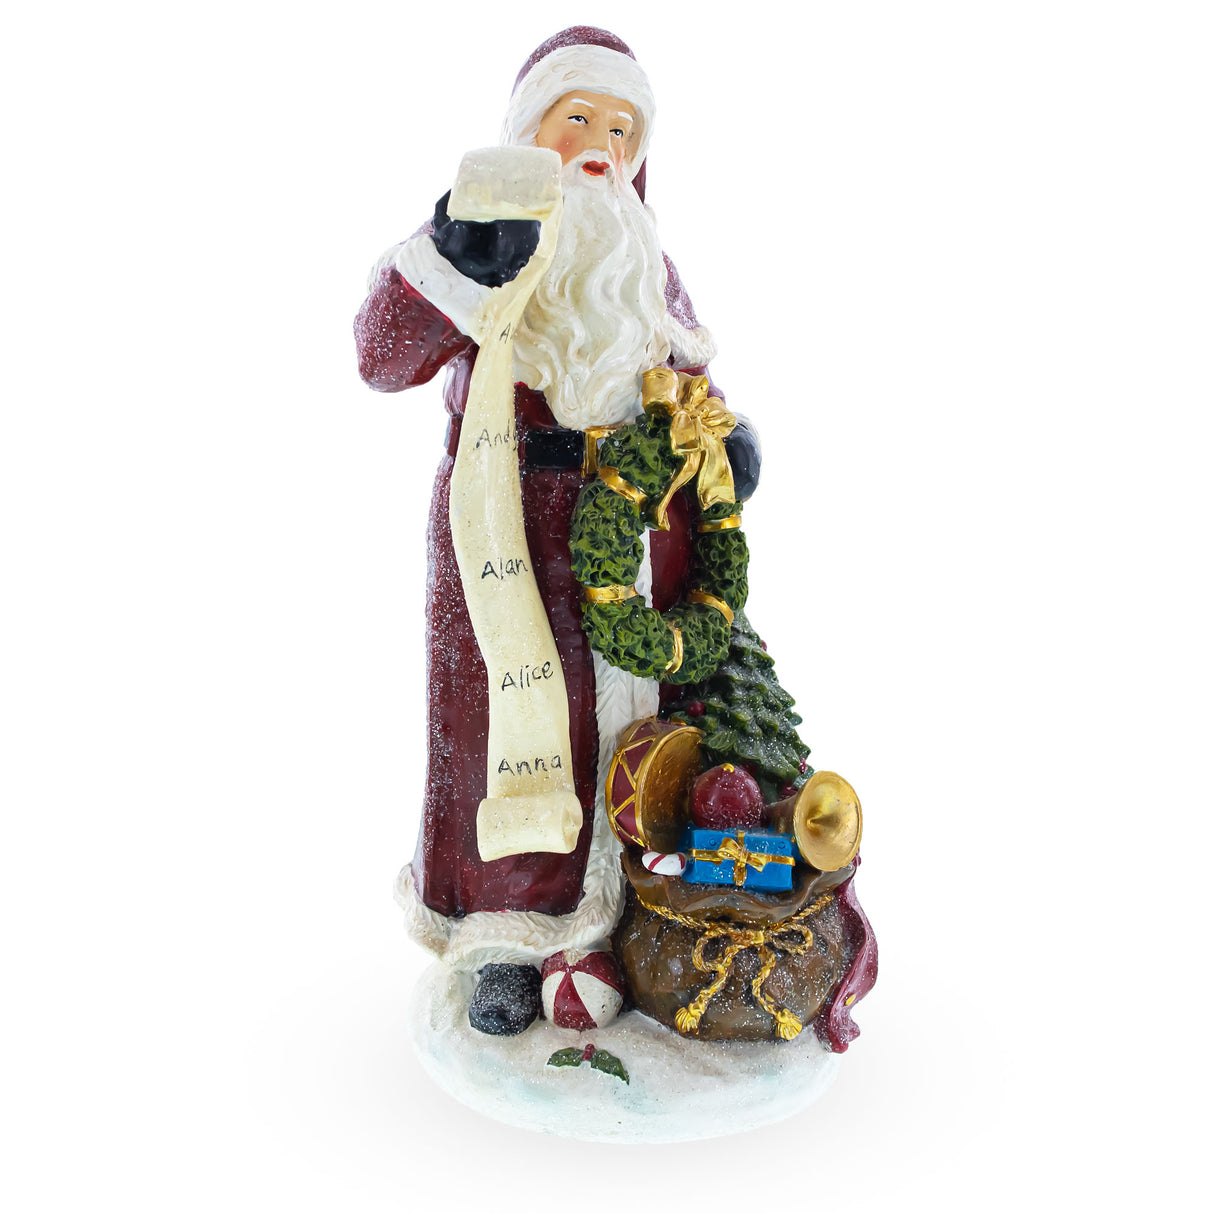 Buy Christmas Decor > Figurines > Santa > AL by BestPysanky Online Gift Ship